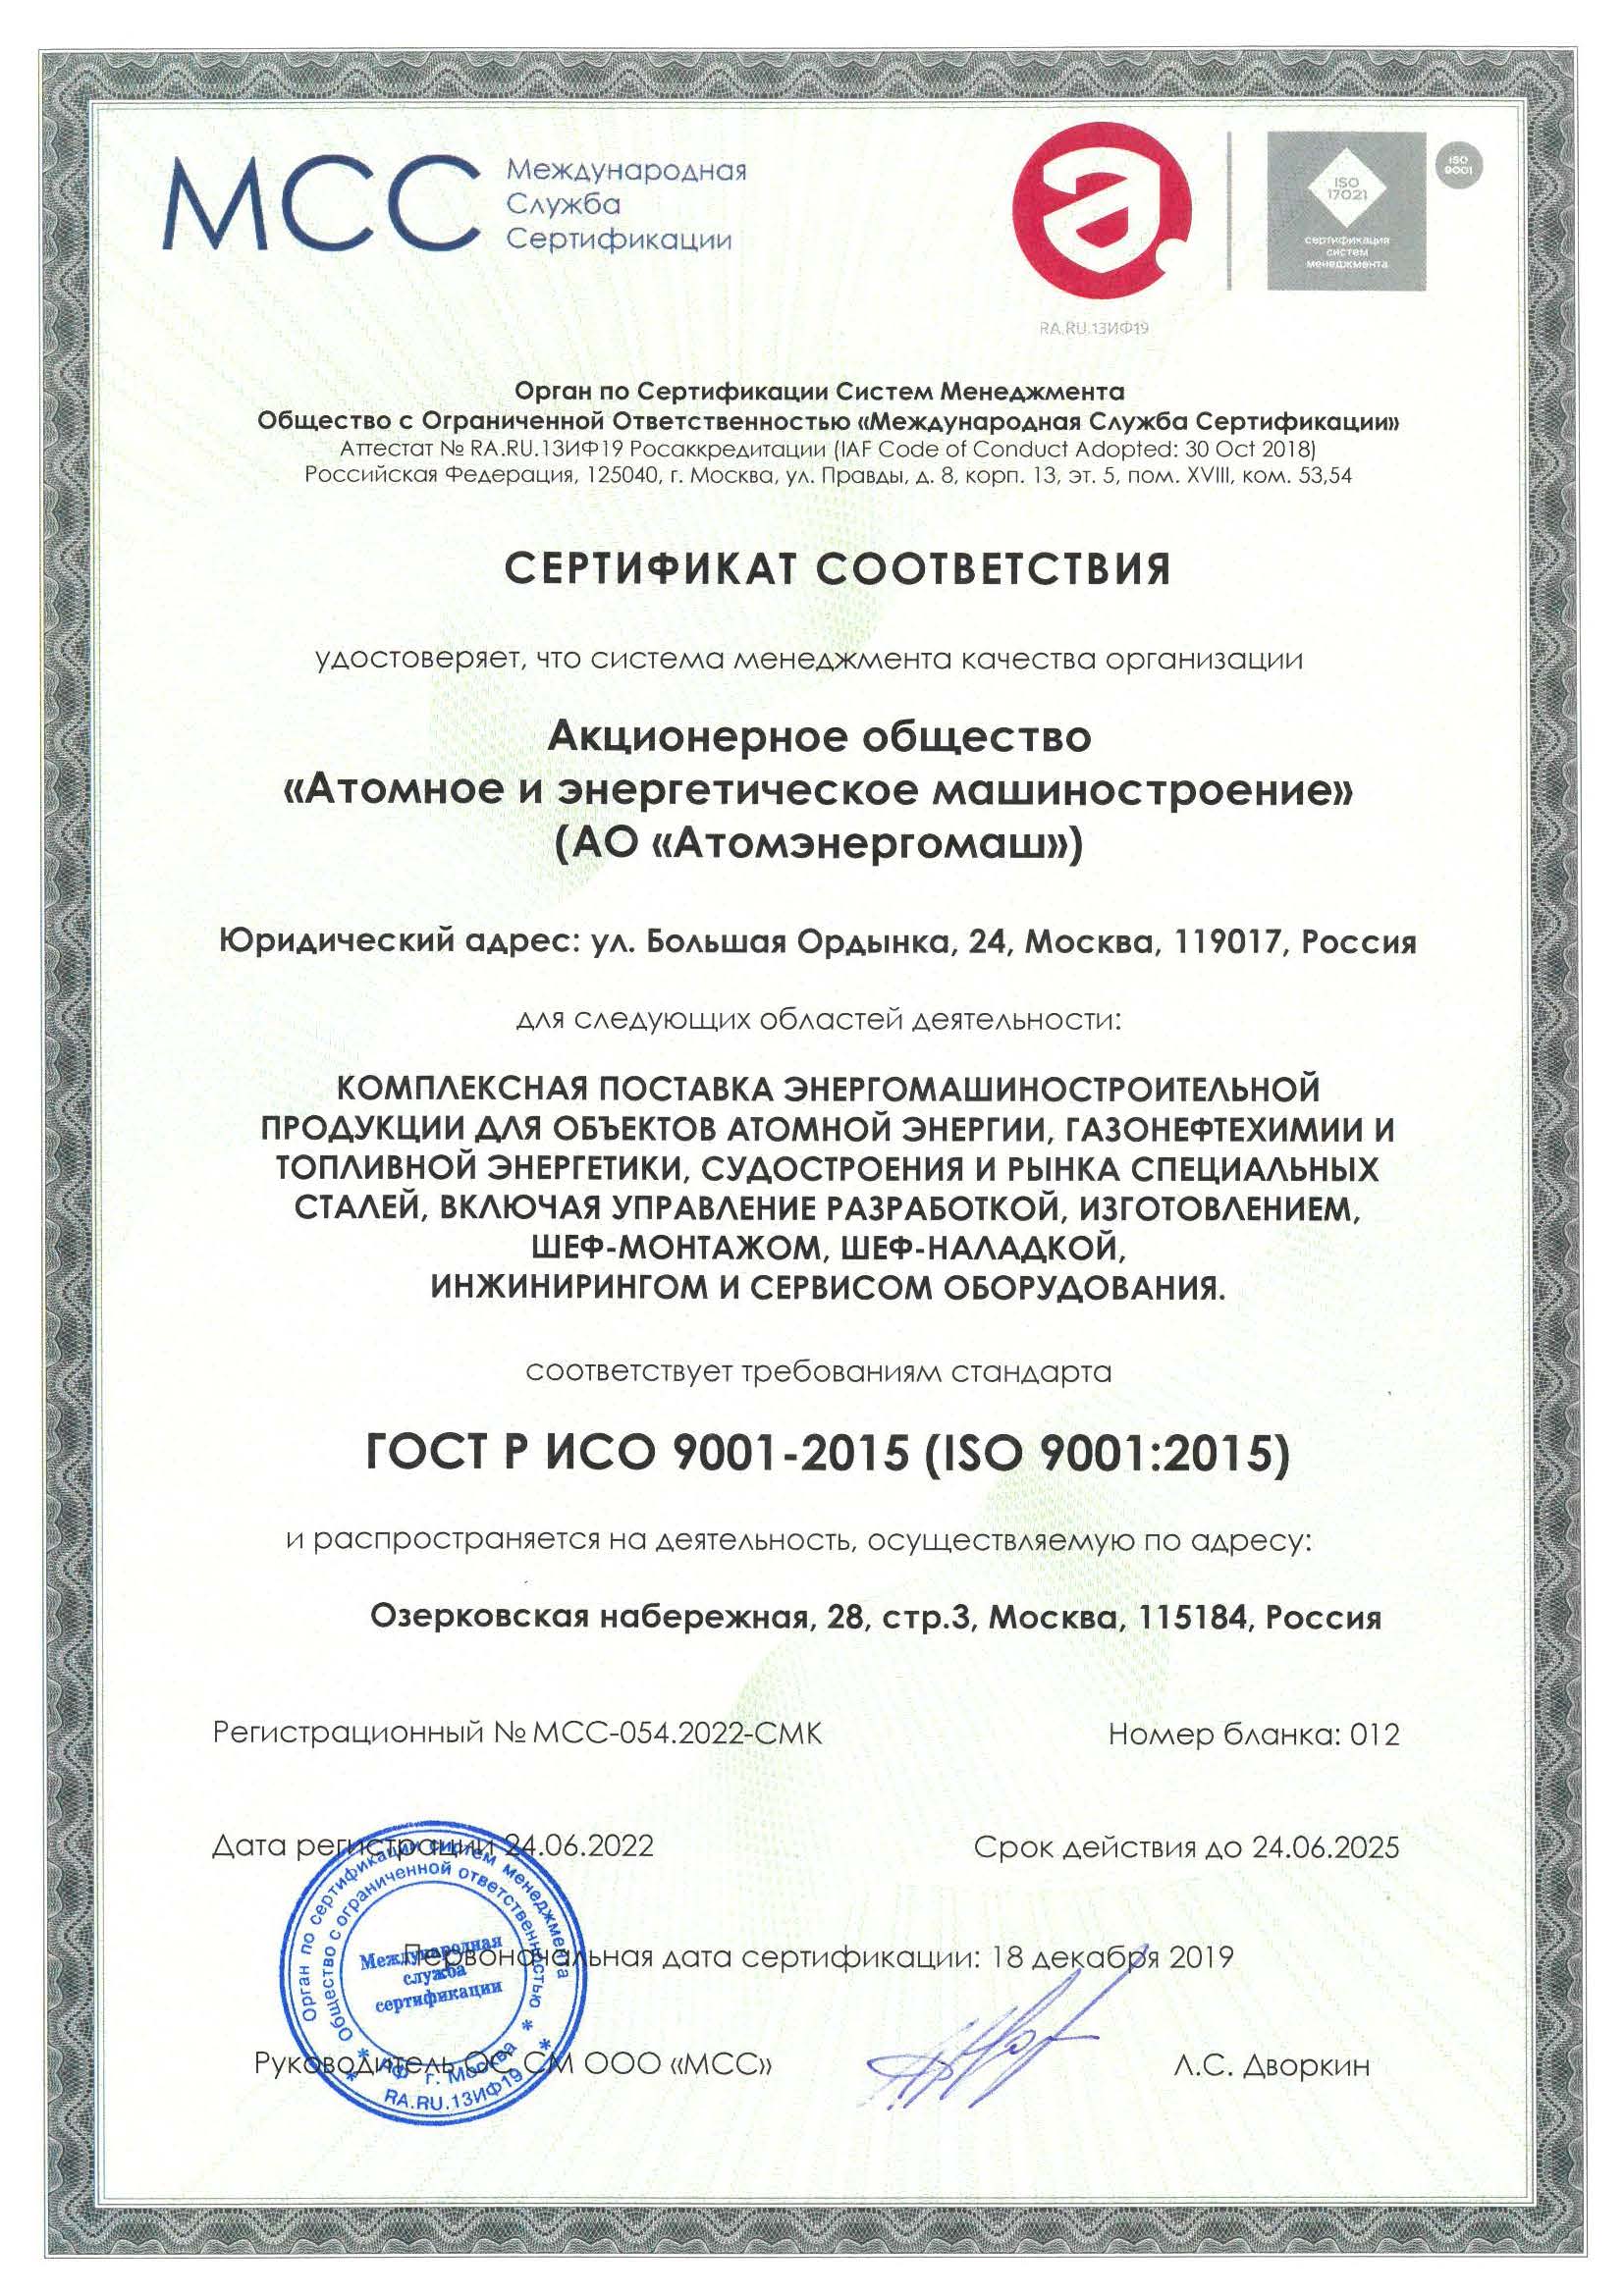 Завод «Атомэнергомаш» прошел ресертификационный аудит на соответствие международным требованиям ISO 19443:2018 и ISO 19443:2018